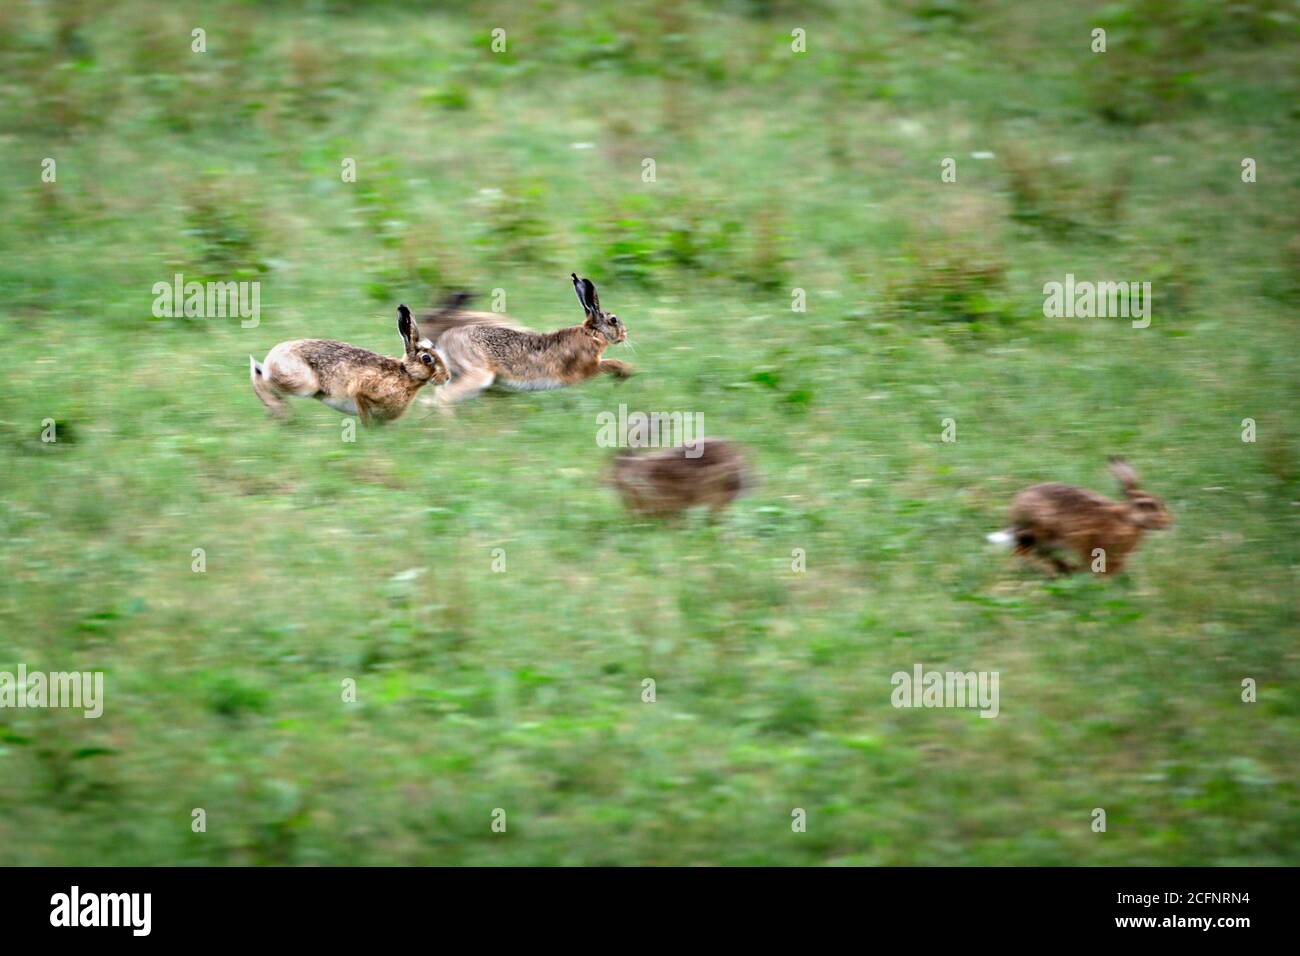 Paesi Bassi, 's-Graveland, tenuta rurale Hilverbeek. Lepre marrone europea (Lepus europaeus). Lepri maschili che lottano per i favori della femmina. Foto Stock